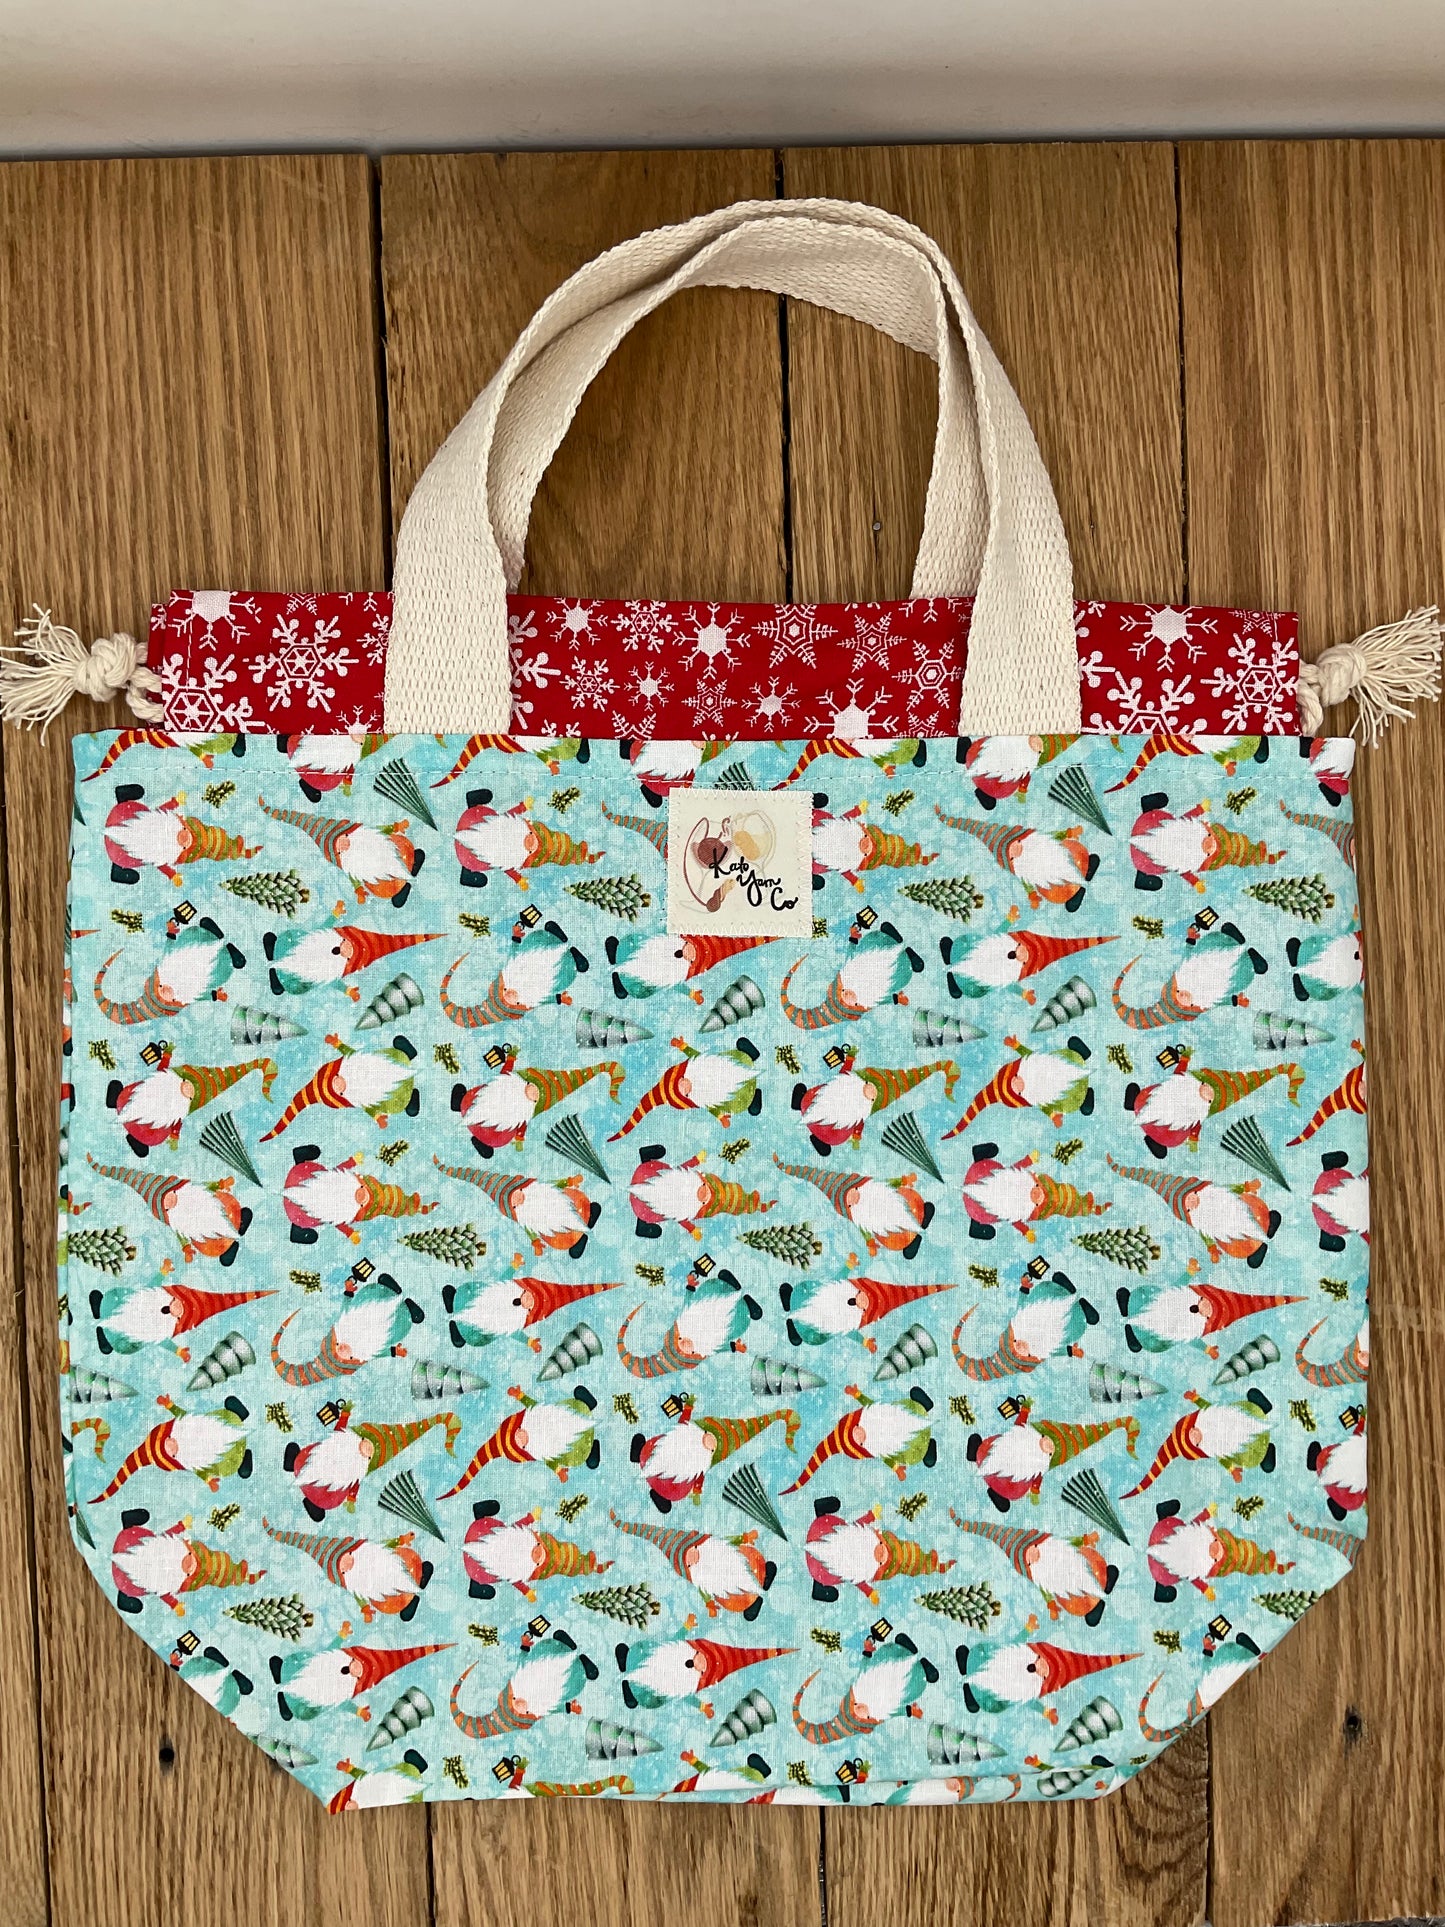 Gnomes Christmas - Project Bag